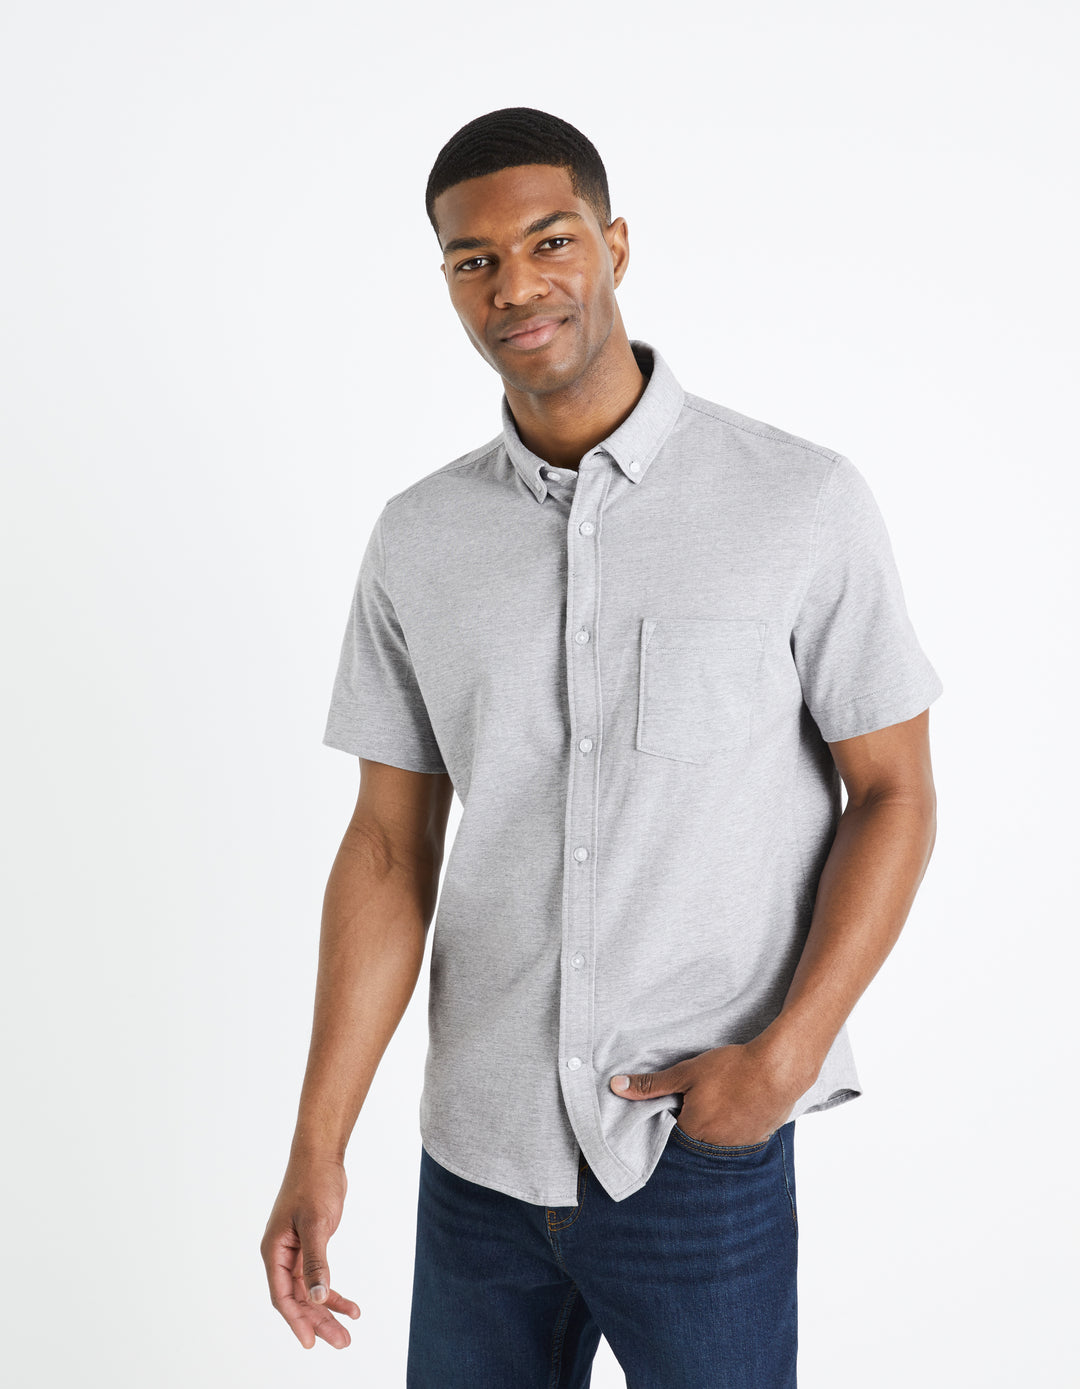 Men - Knitted - Shirt - Short sleeves